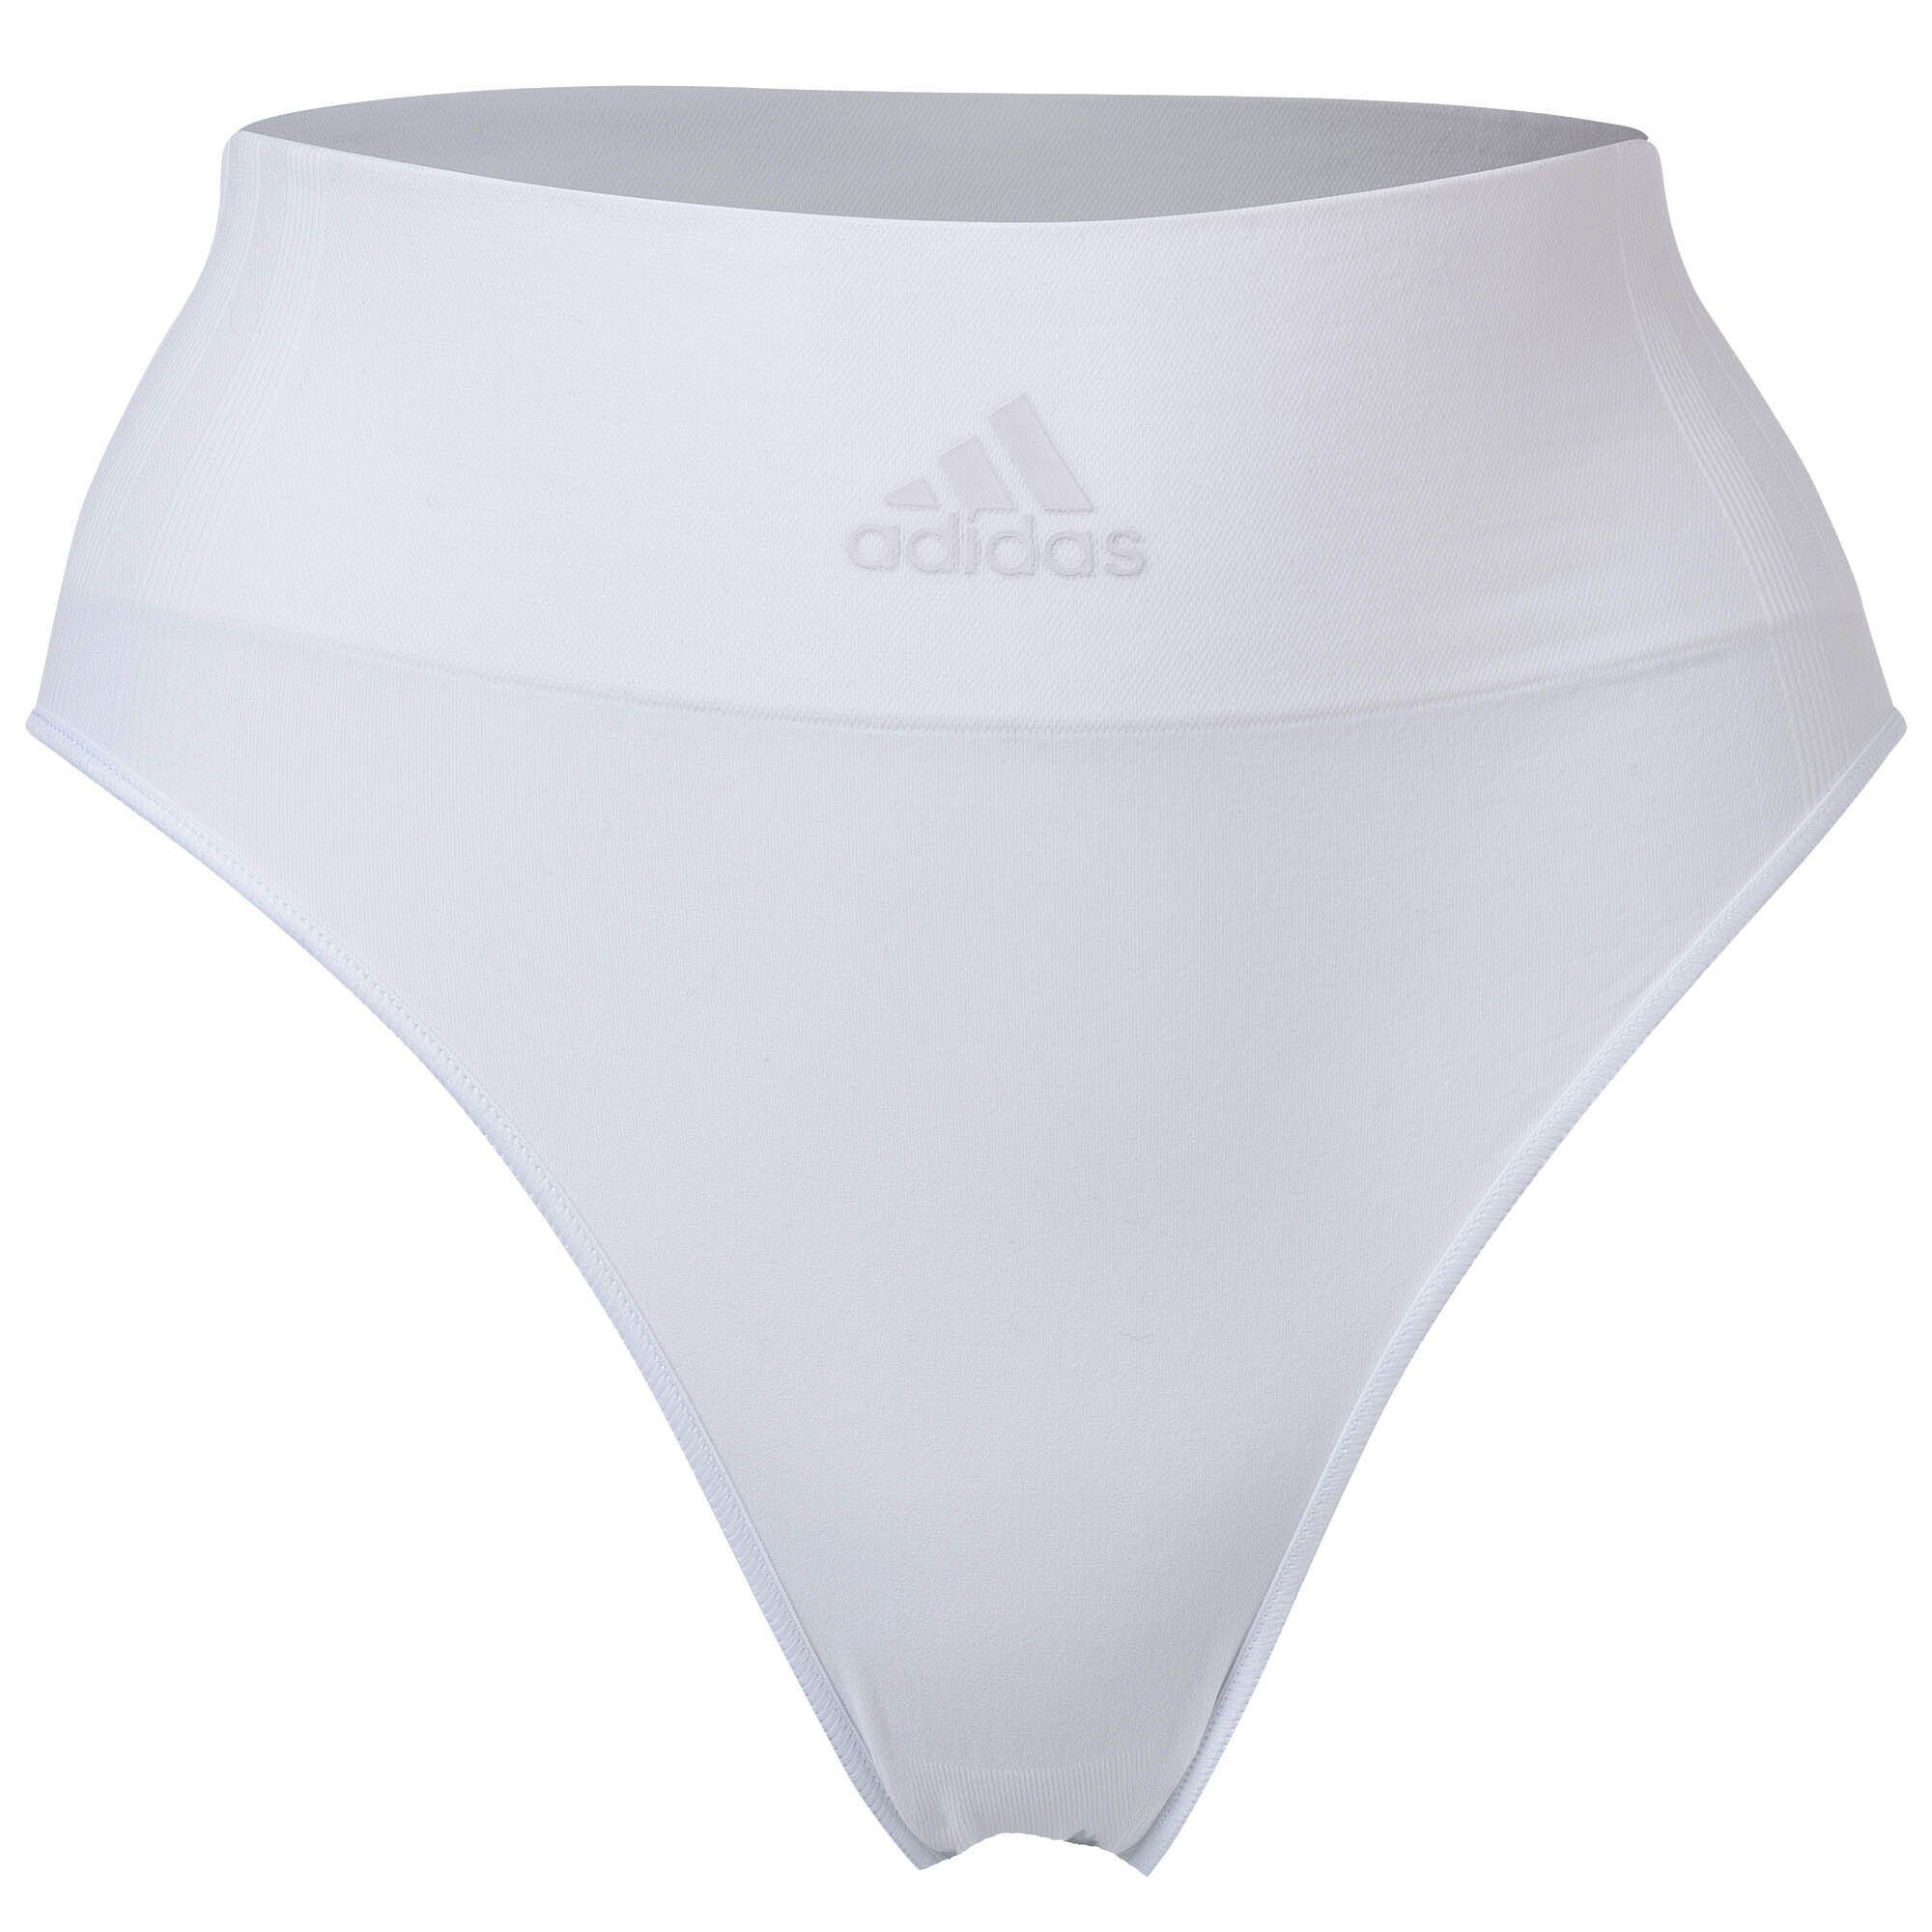 Damen Sportswear Slip, High Smart - Slip Briefs, adidas Schwarz/Weiß 2er Pack Leg